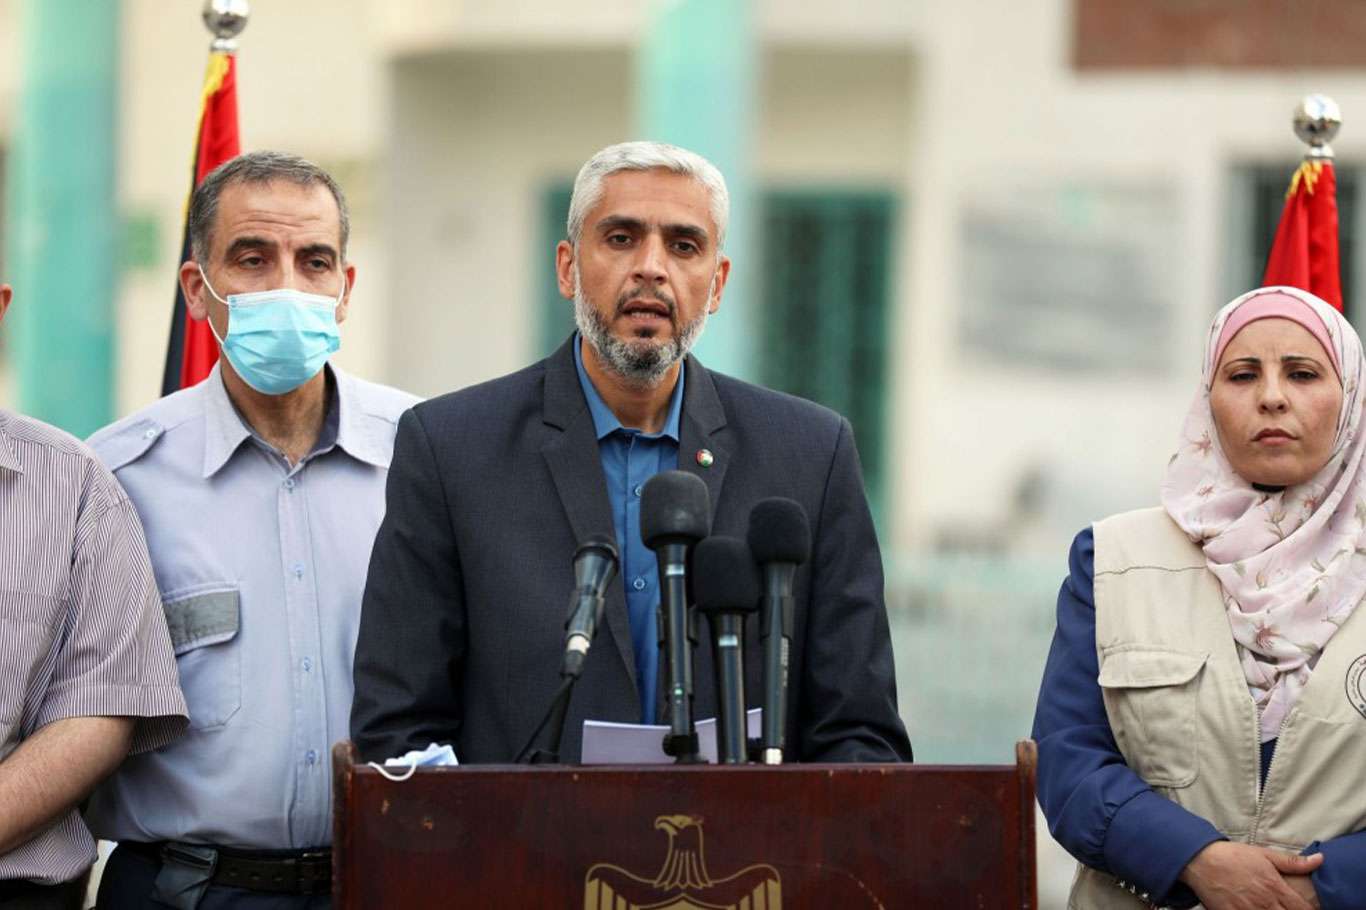 المكتب الإعلامي الحكومي بغزة يكشف تكلفة أضرار العدوان الأخير